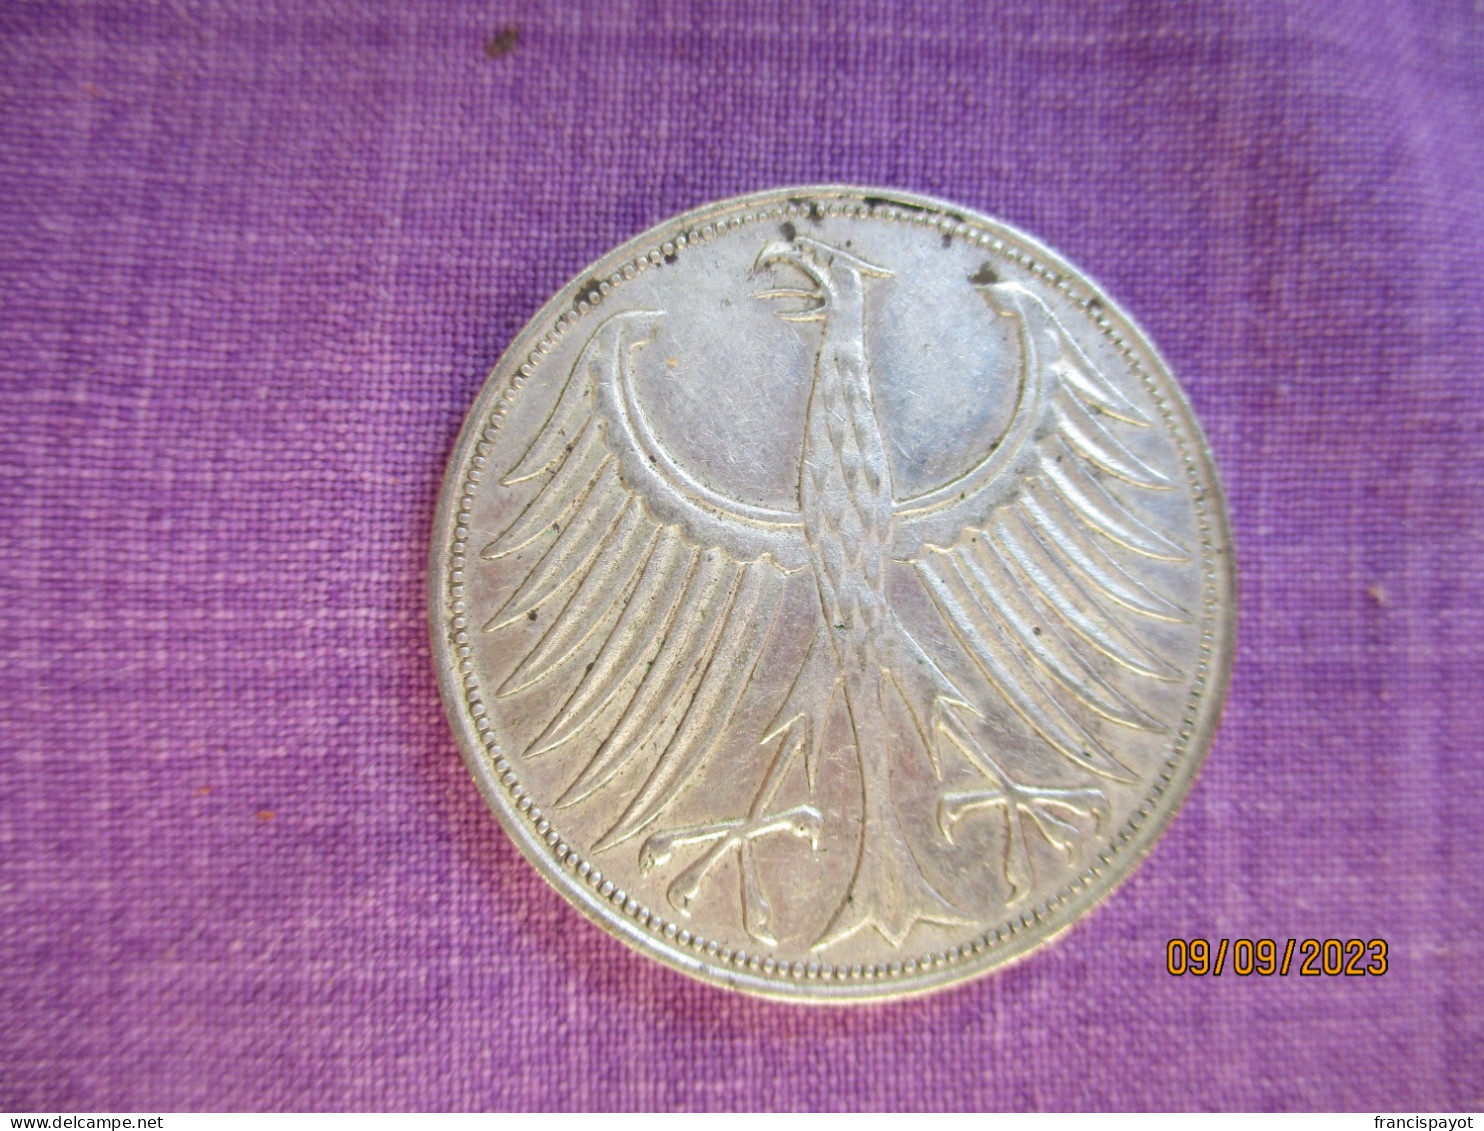 Allemagne 5 DM 1965 G (silver) - 5 Mark